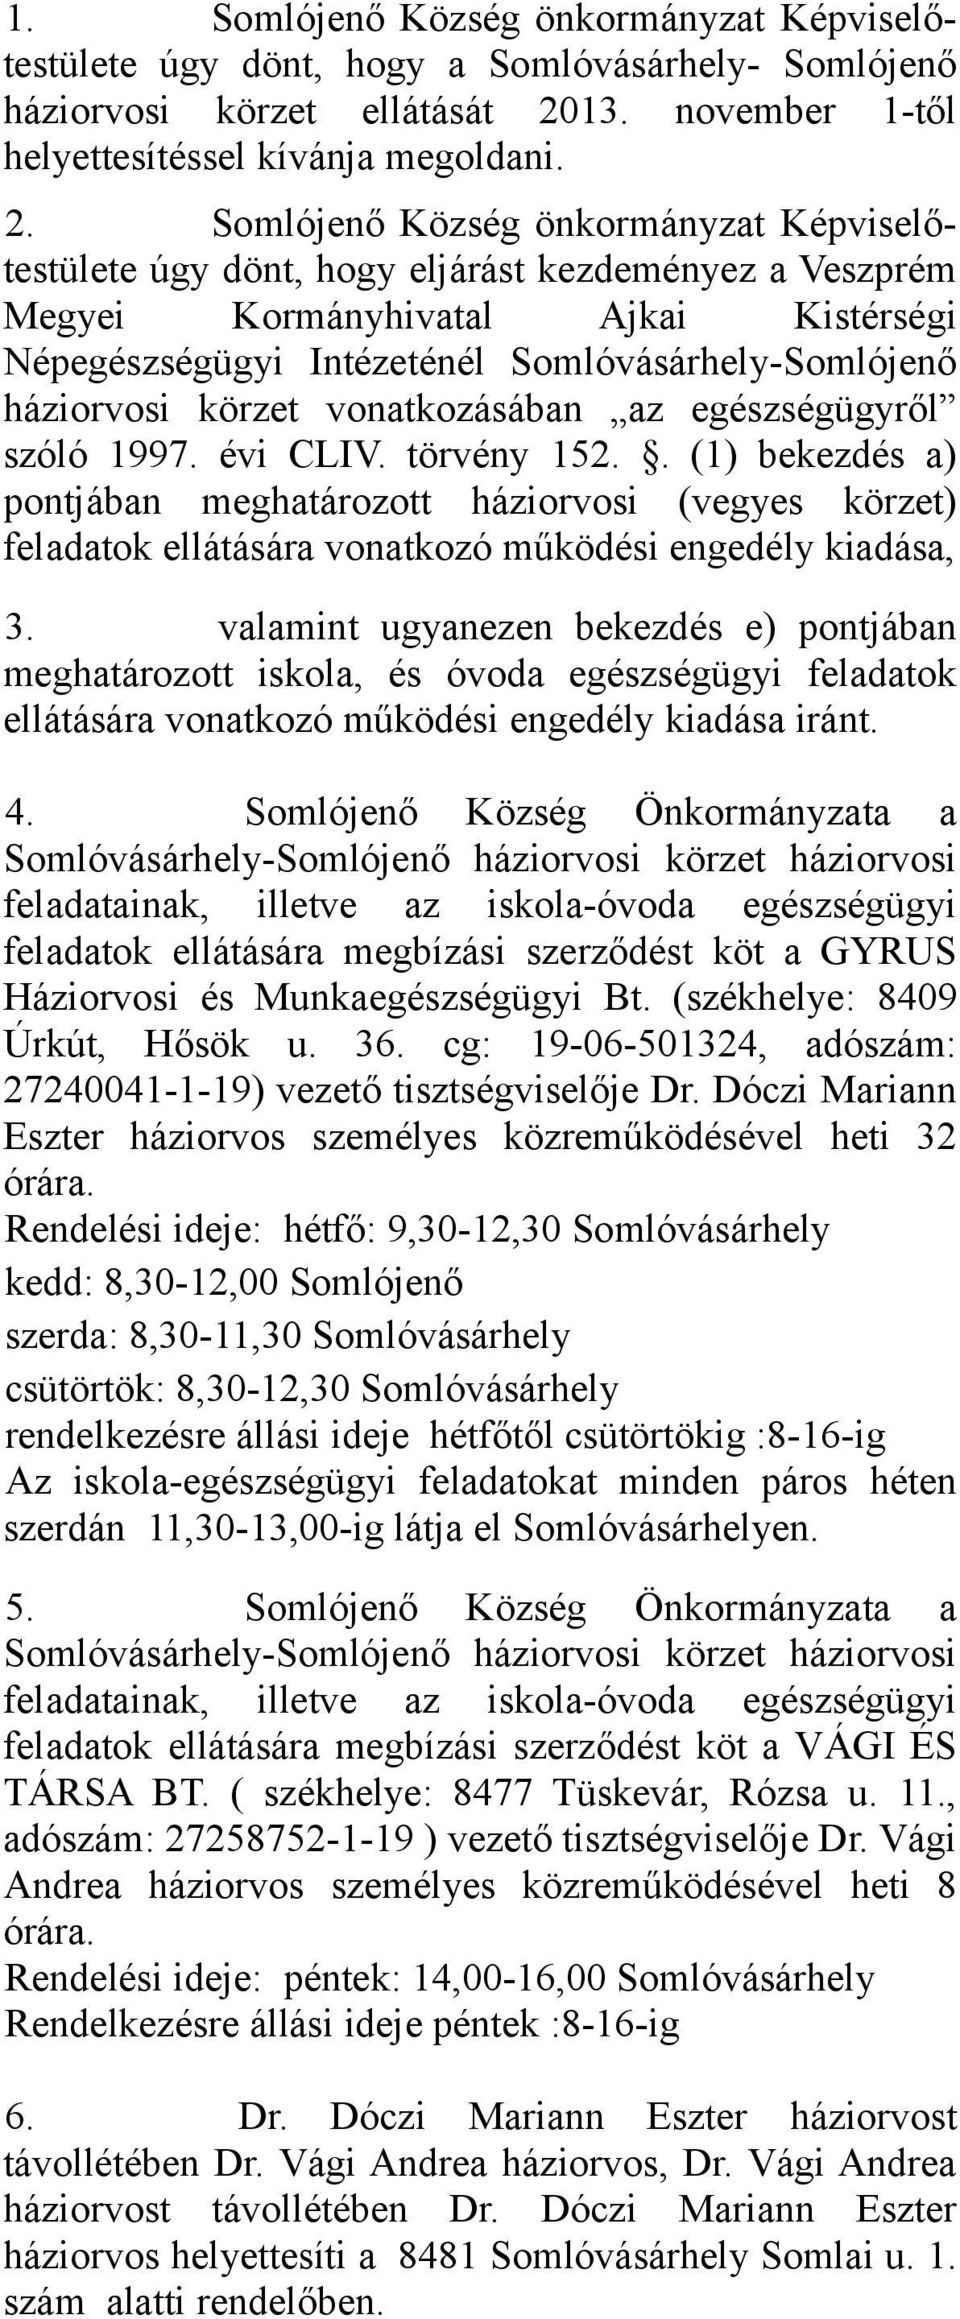 Somlójenő Község önkormányzat Képviselőtestülete úgy dönt, hogy eljárást kezdeményez a Veszprém Megyei Kormányhivatal Ajkai Kistérségi Népegészségügyi Intézeténél Somlóvásárhely-Somlójenő háziorvosi